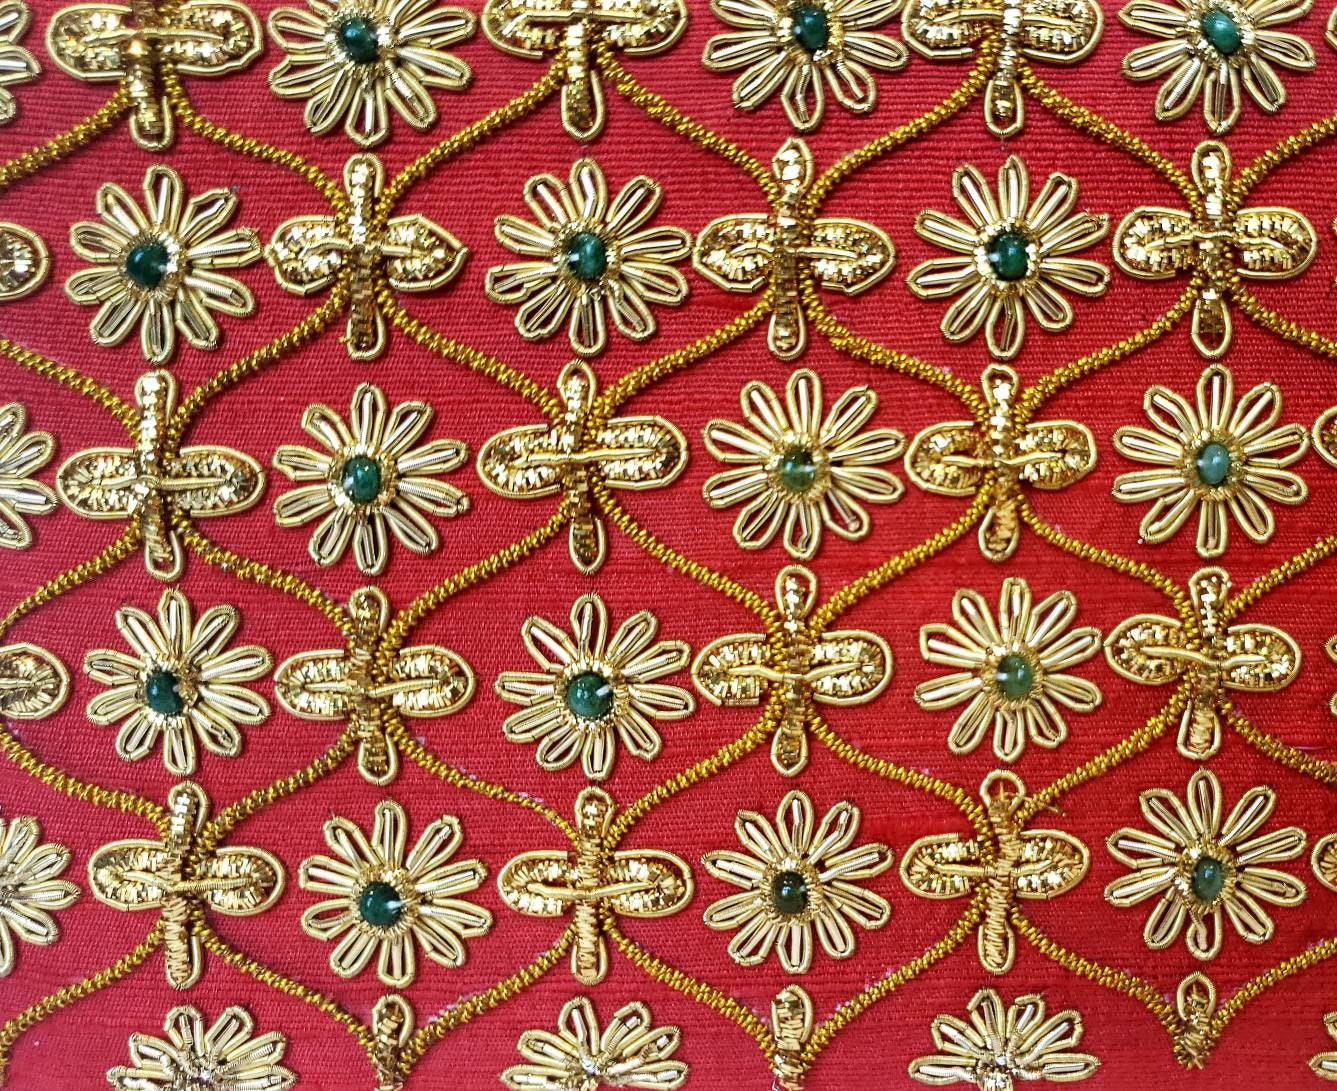 Silk evening bag, red and gold clutch,embroidered handbag, embellished ...